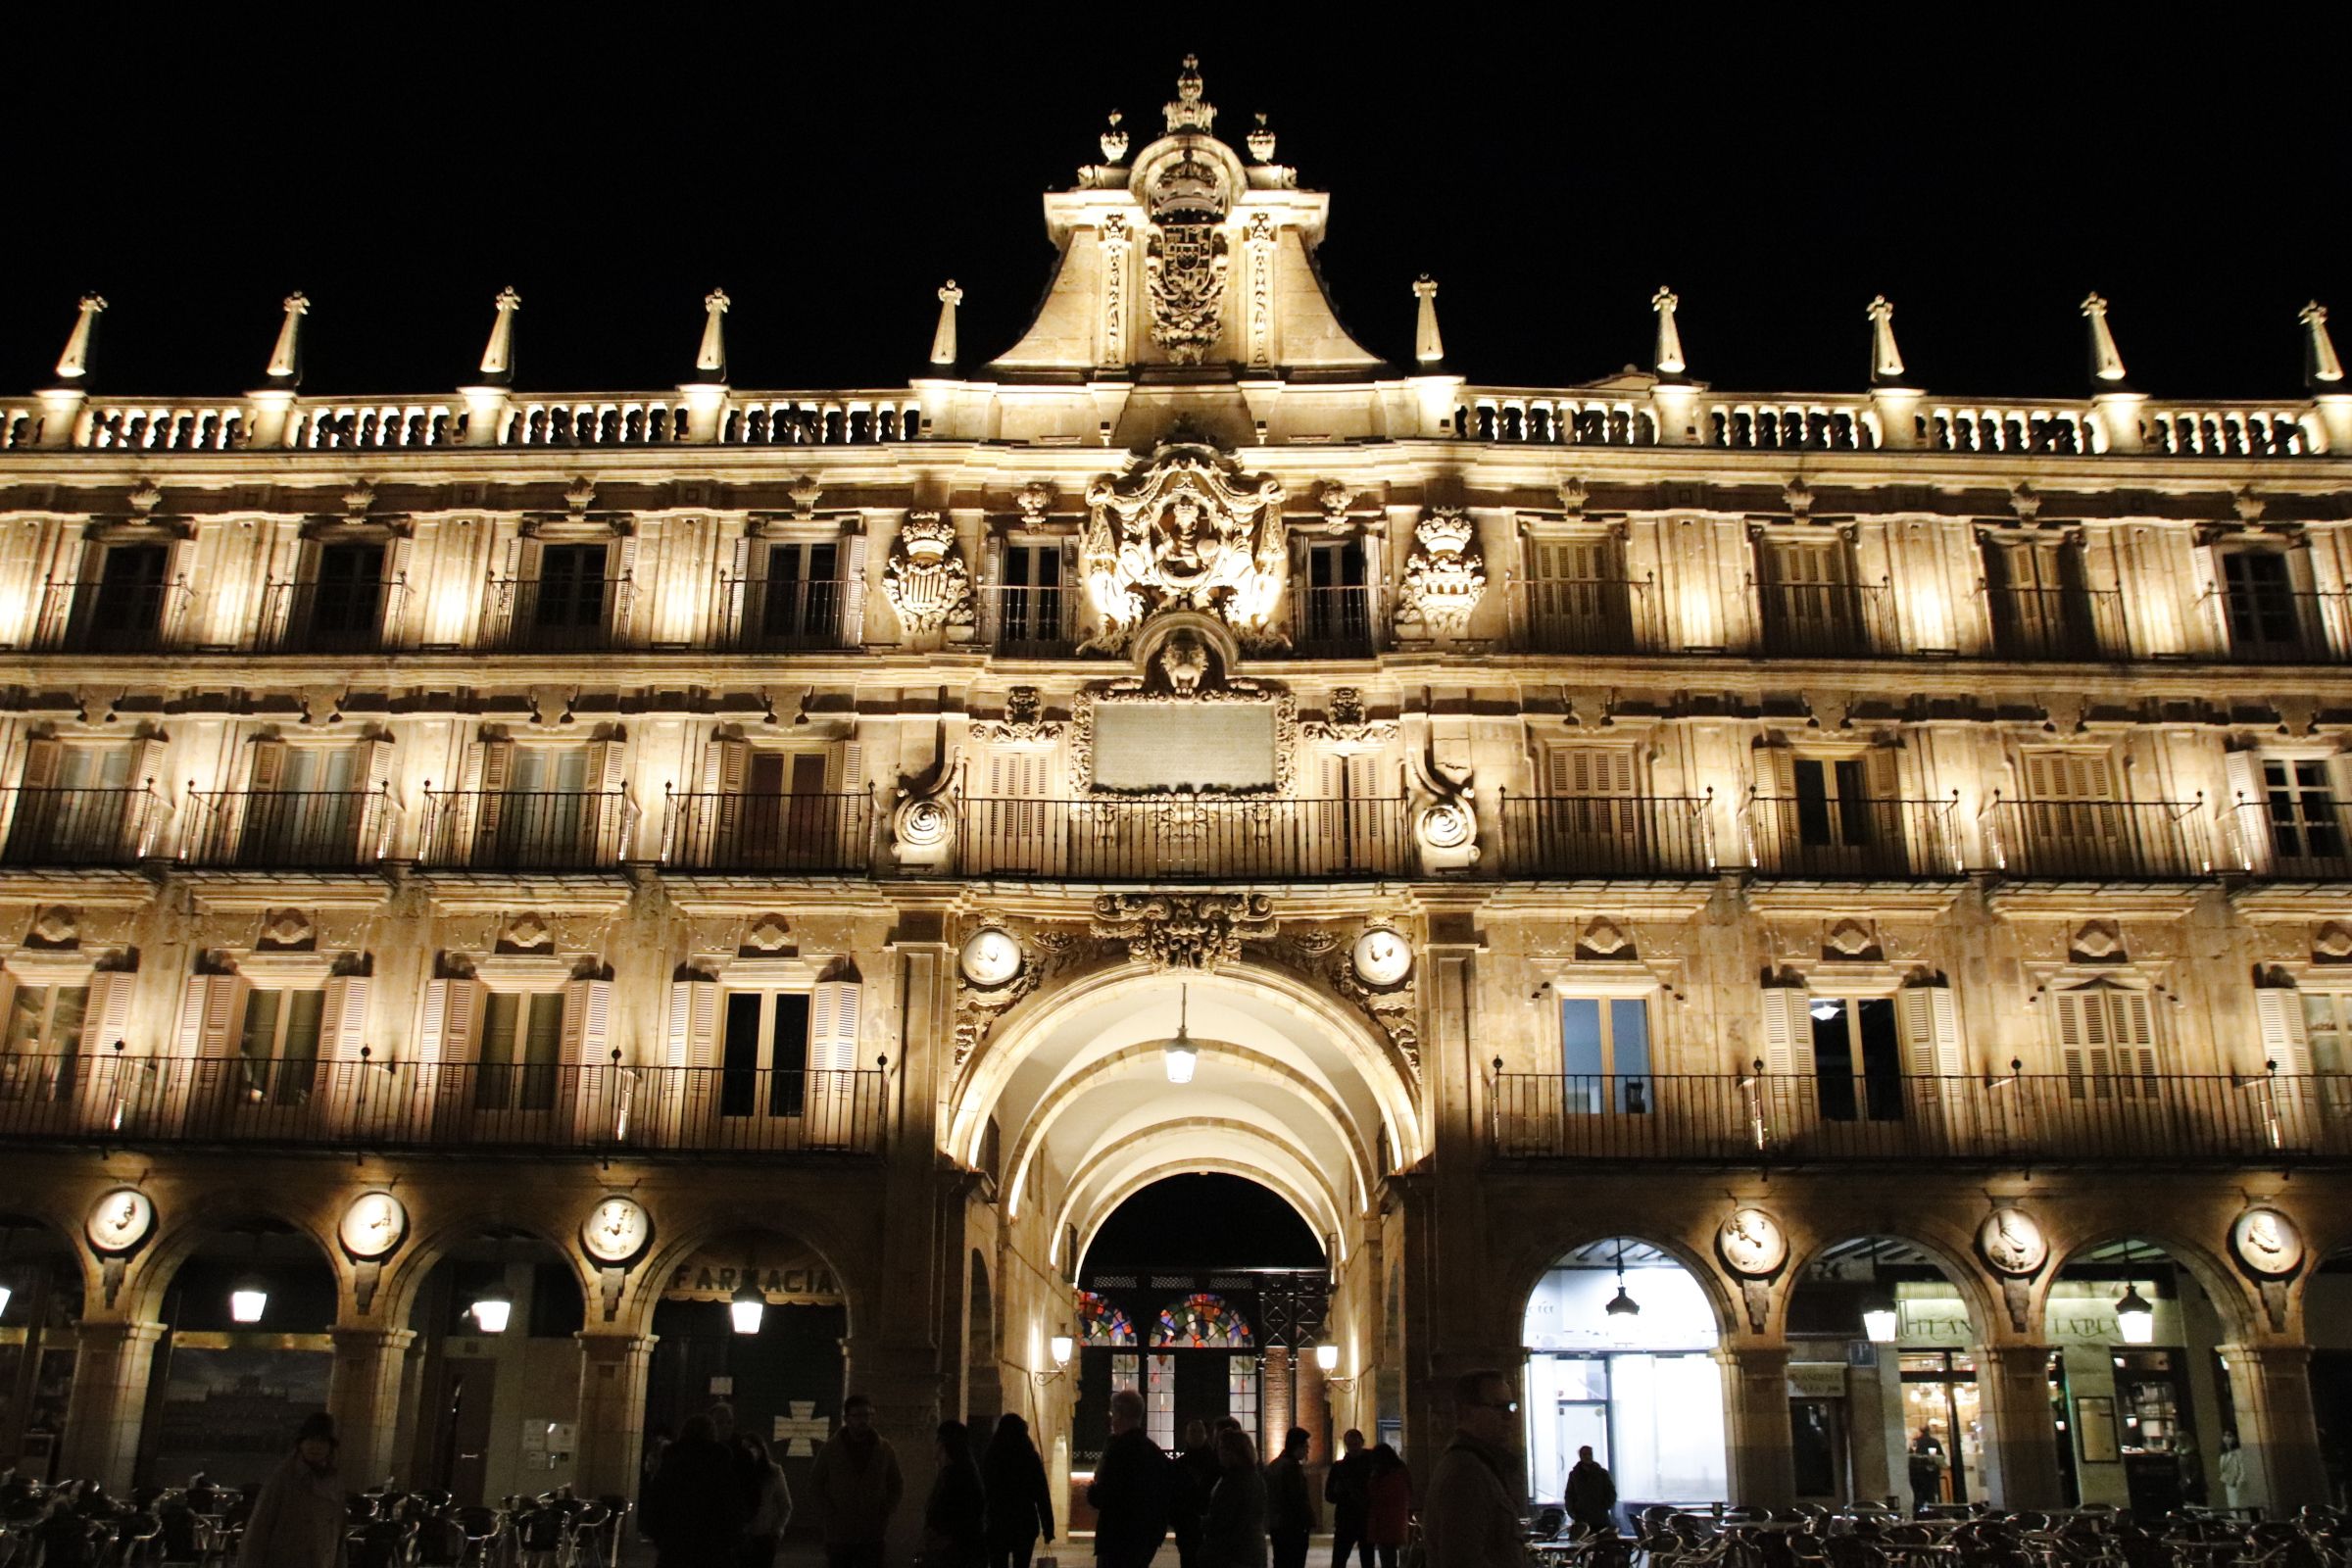 iluminación de la Plaza Mayor de Salamanca